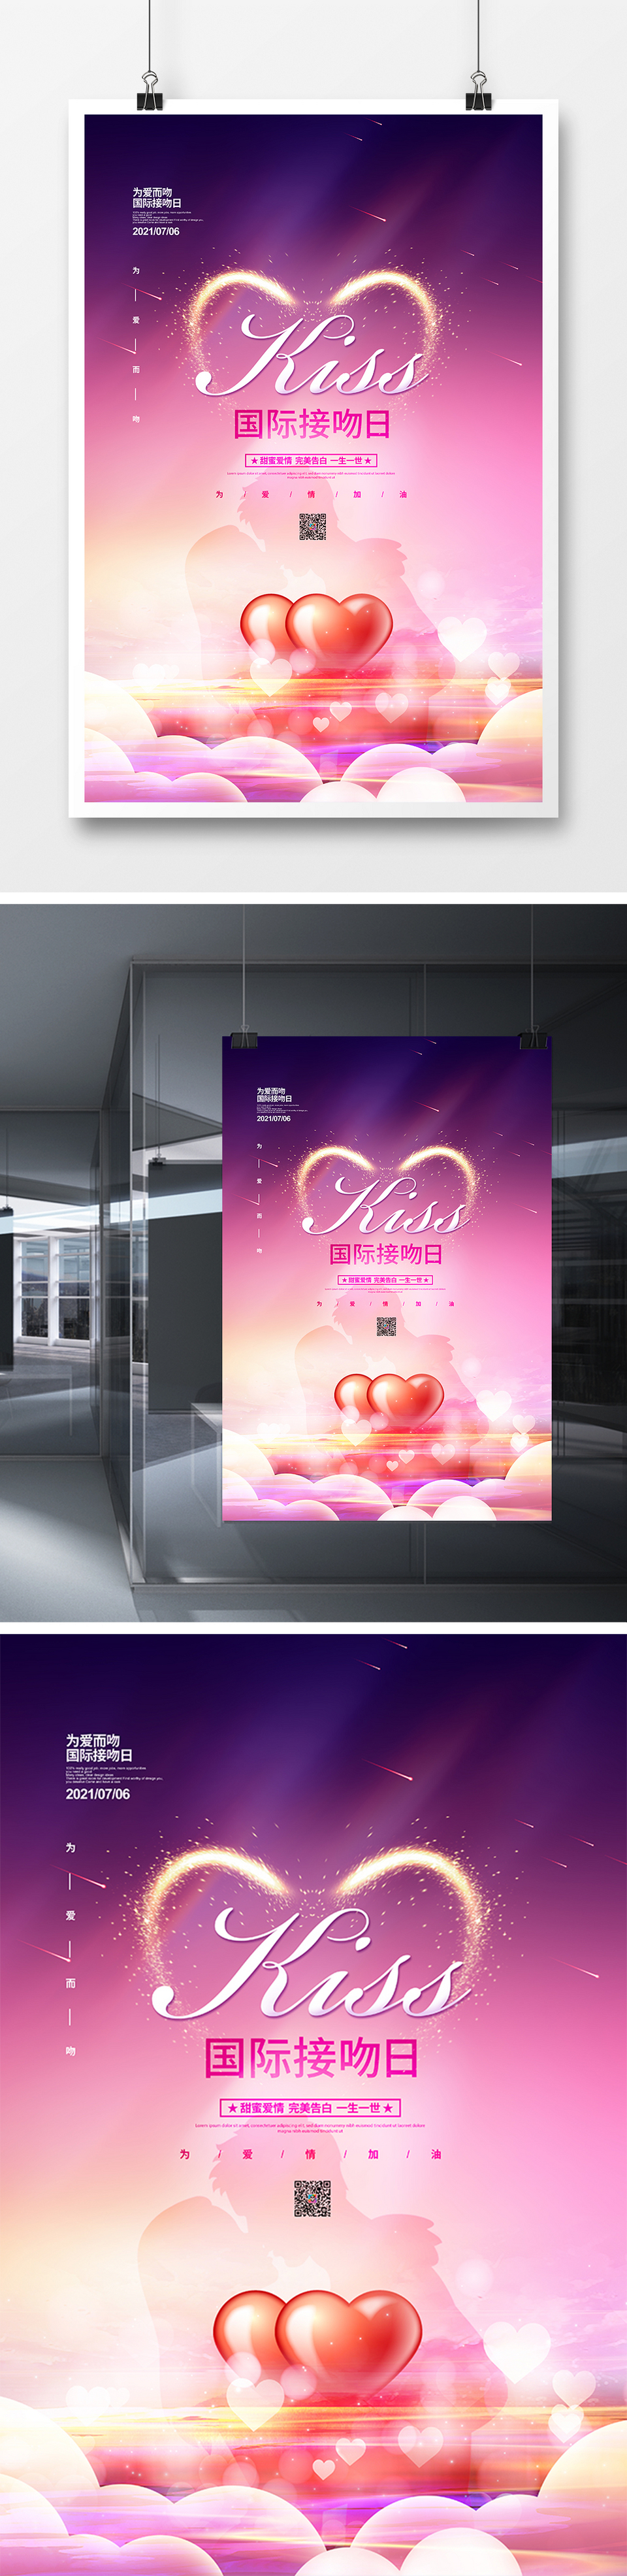 唯美简约国际接吻日节日宣传海报设计